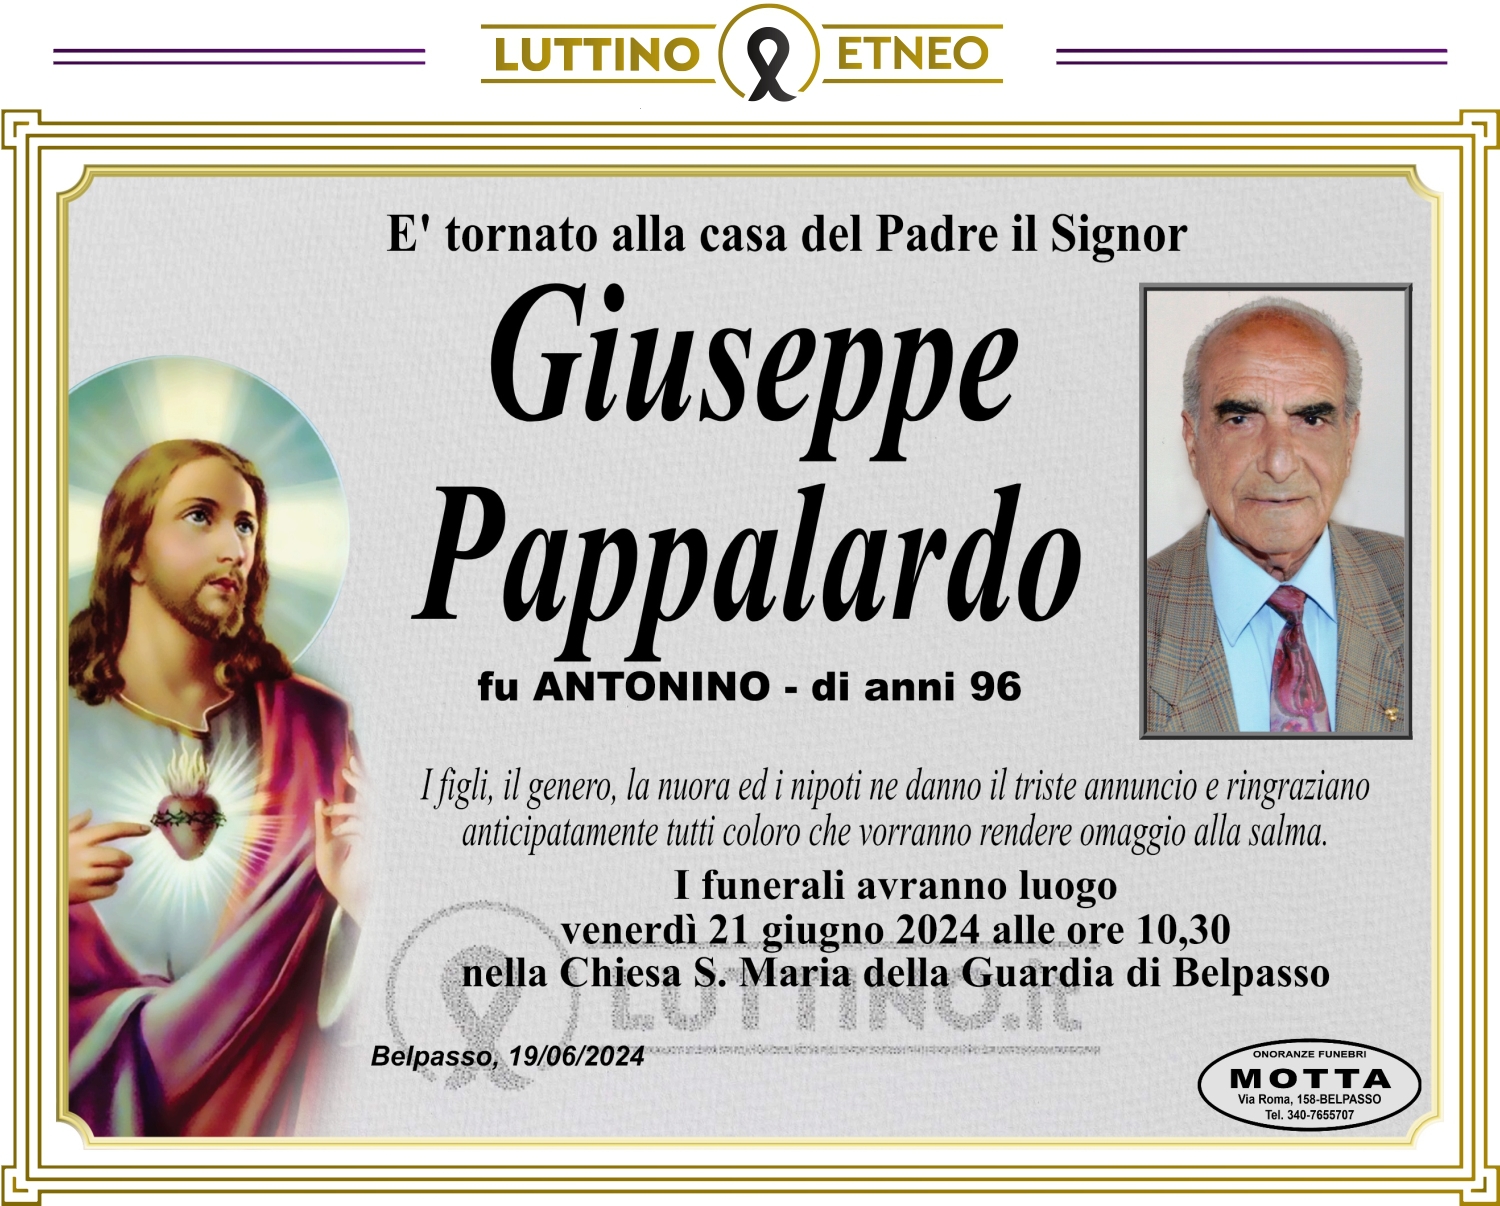 Giuseppe Pappalardo